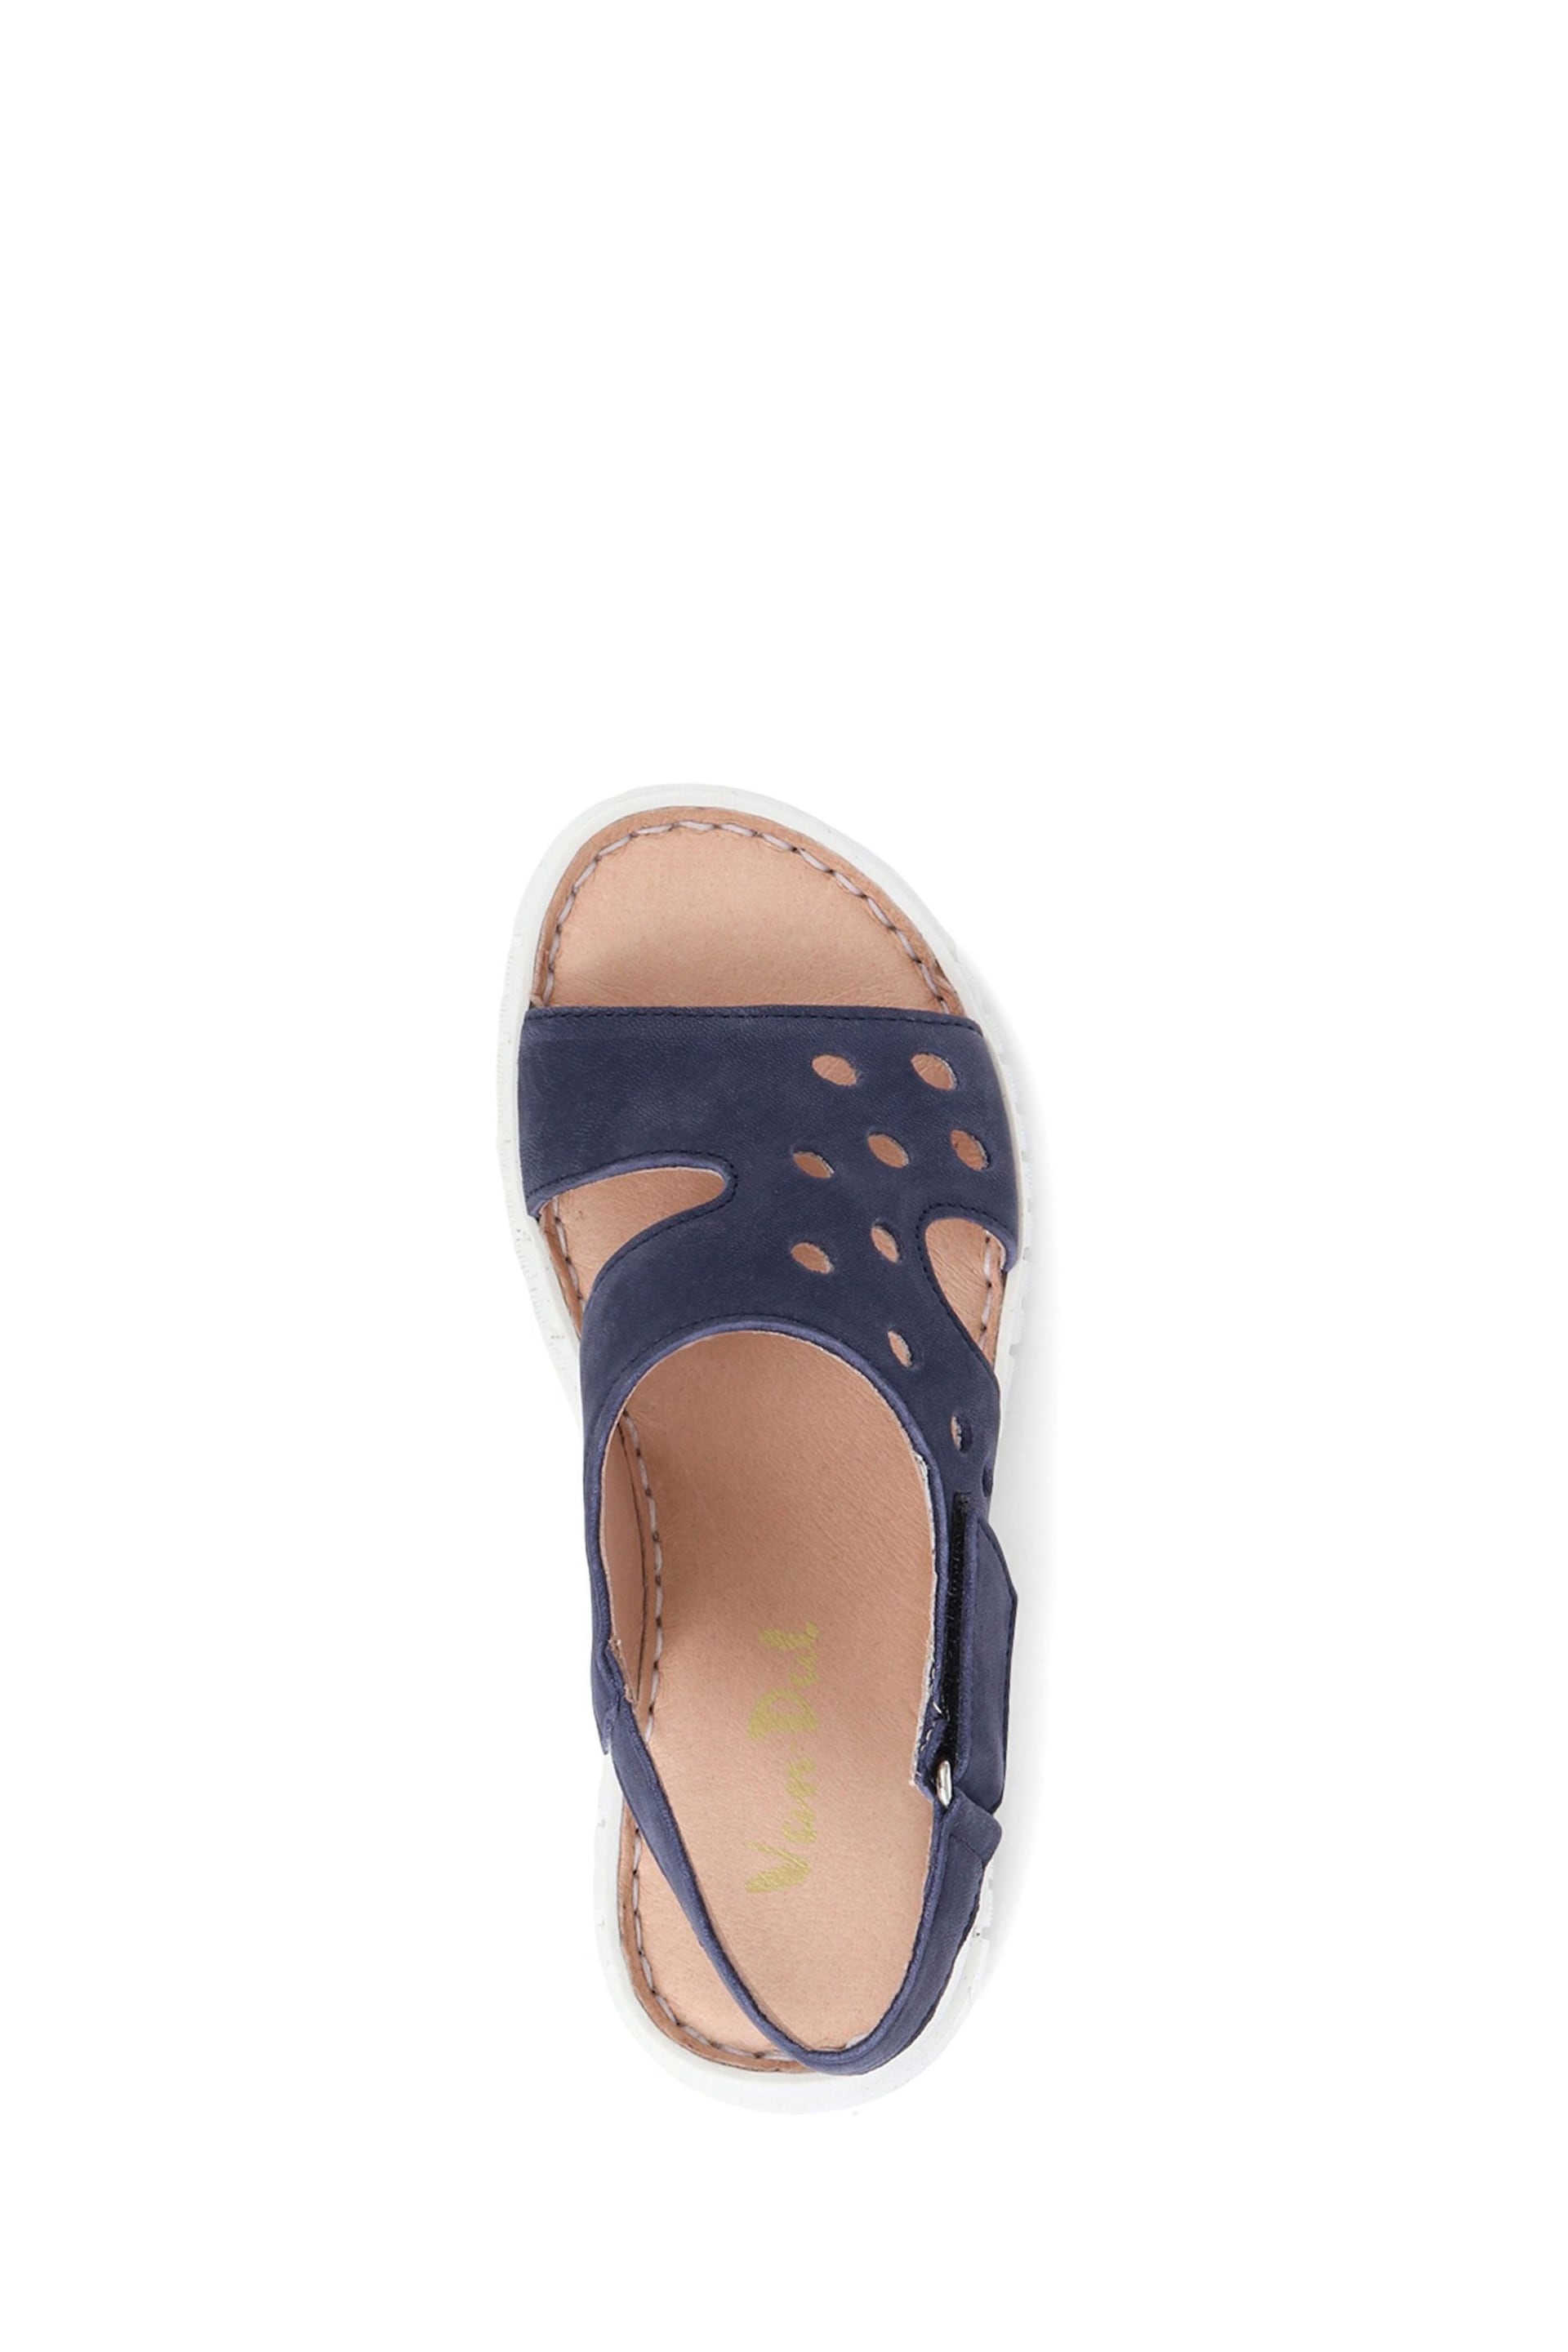 Van Dal Leather Platform Sandals - Image 4 of 5